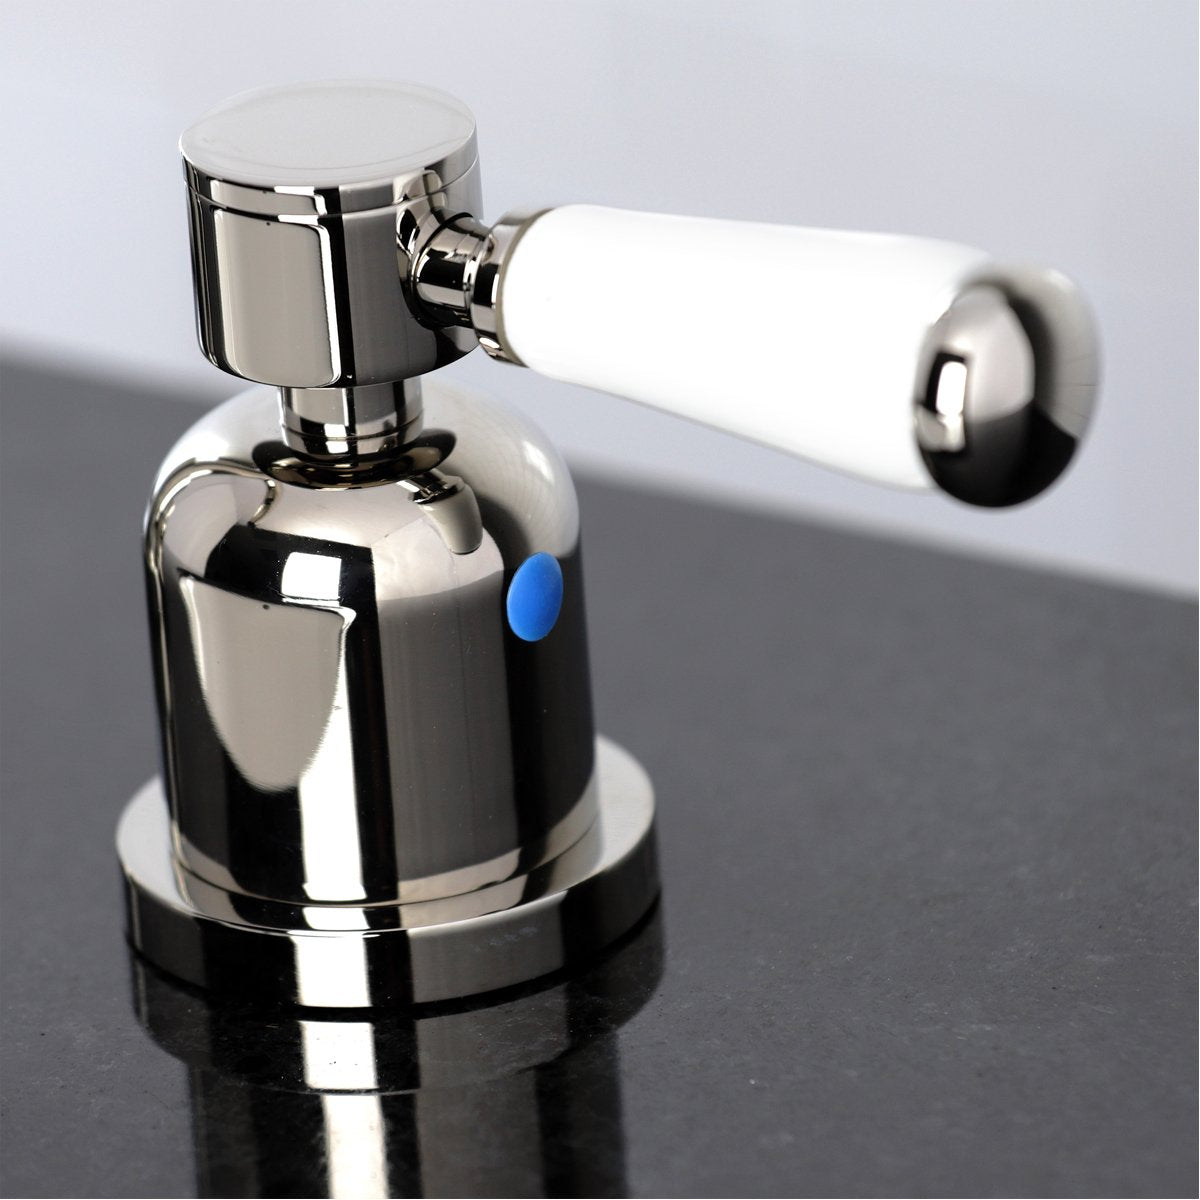 Kingston Brass Fauceture Paris Widespread Bathroom Faucet